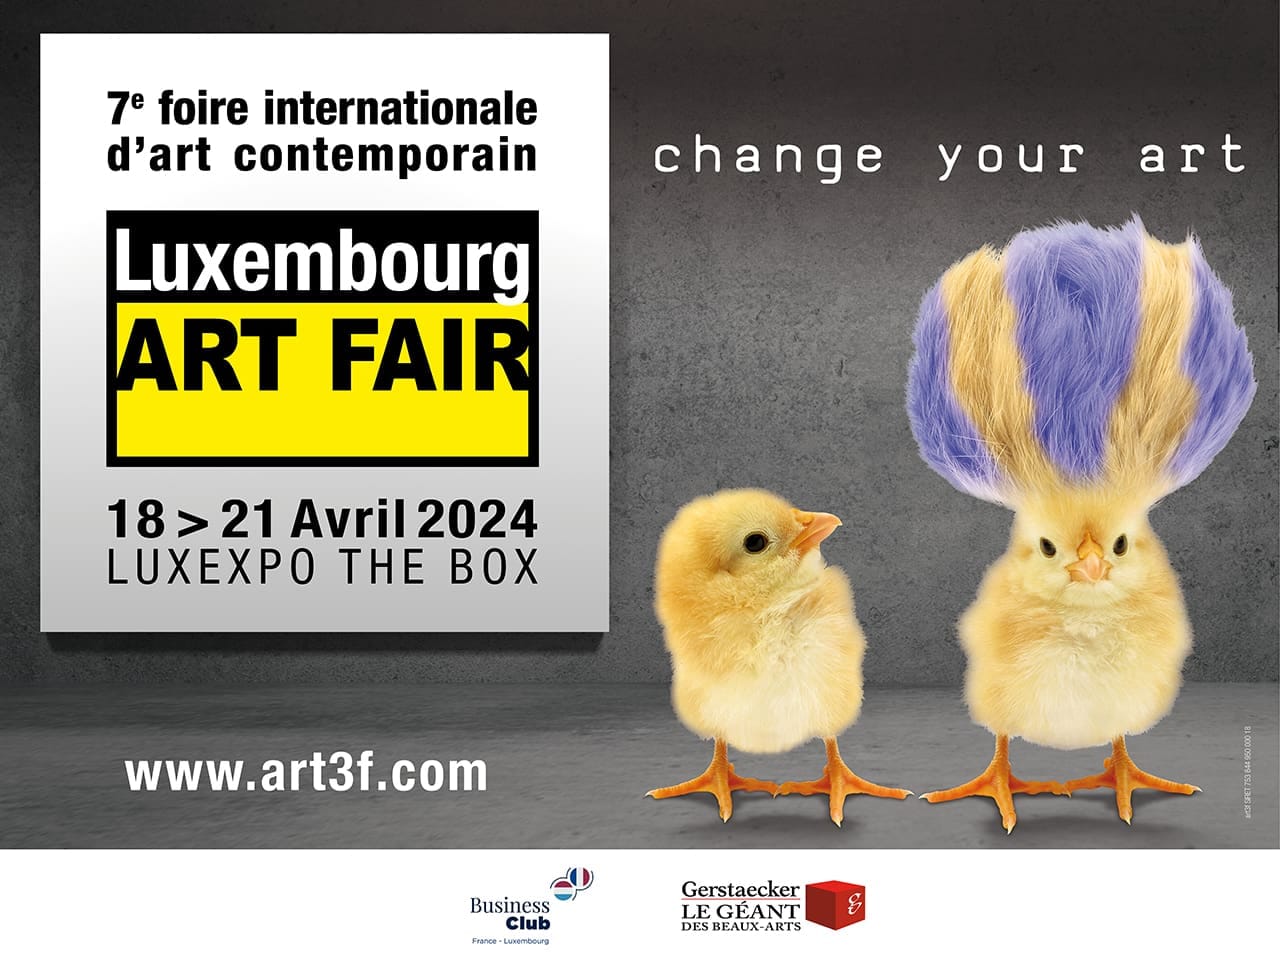 Art Fair Luxembourg,18-21 Avril 